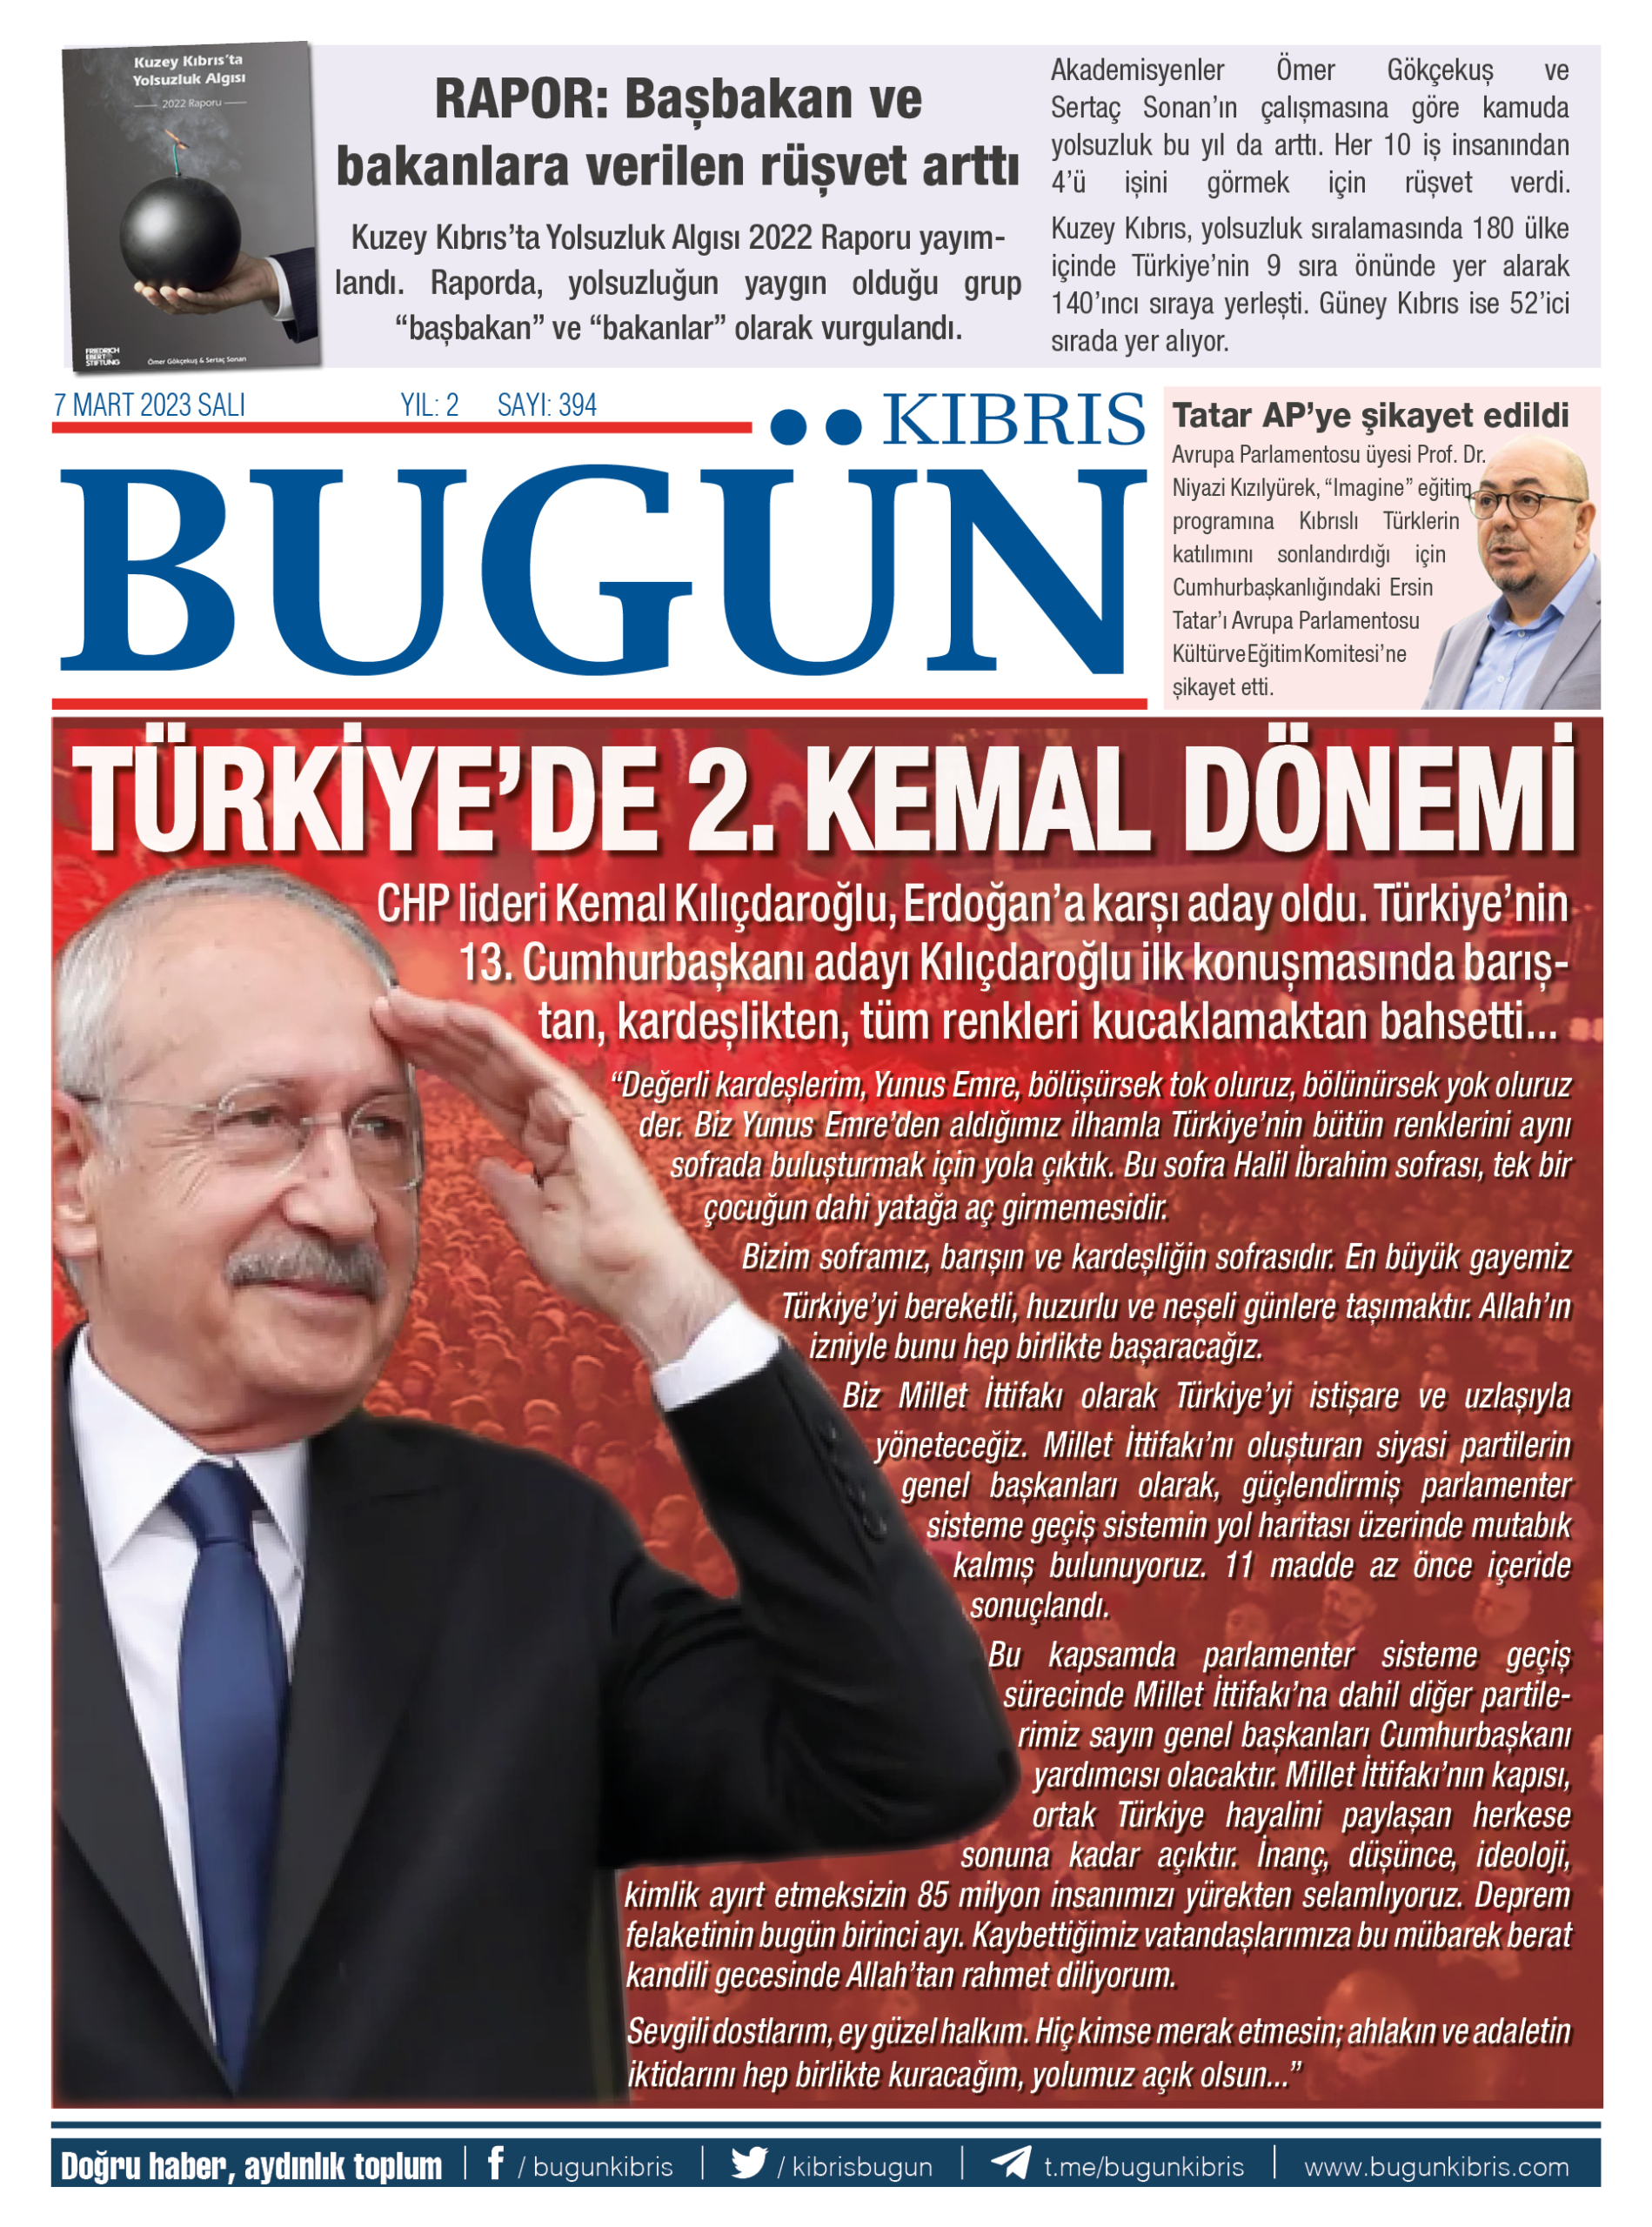 Dünya, Kılıçdaroğlu’nun adaylığını konuşuyor: “Türkiye’de 2. Kemal dönemi”